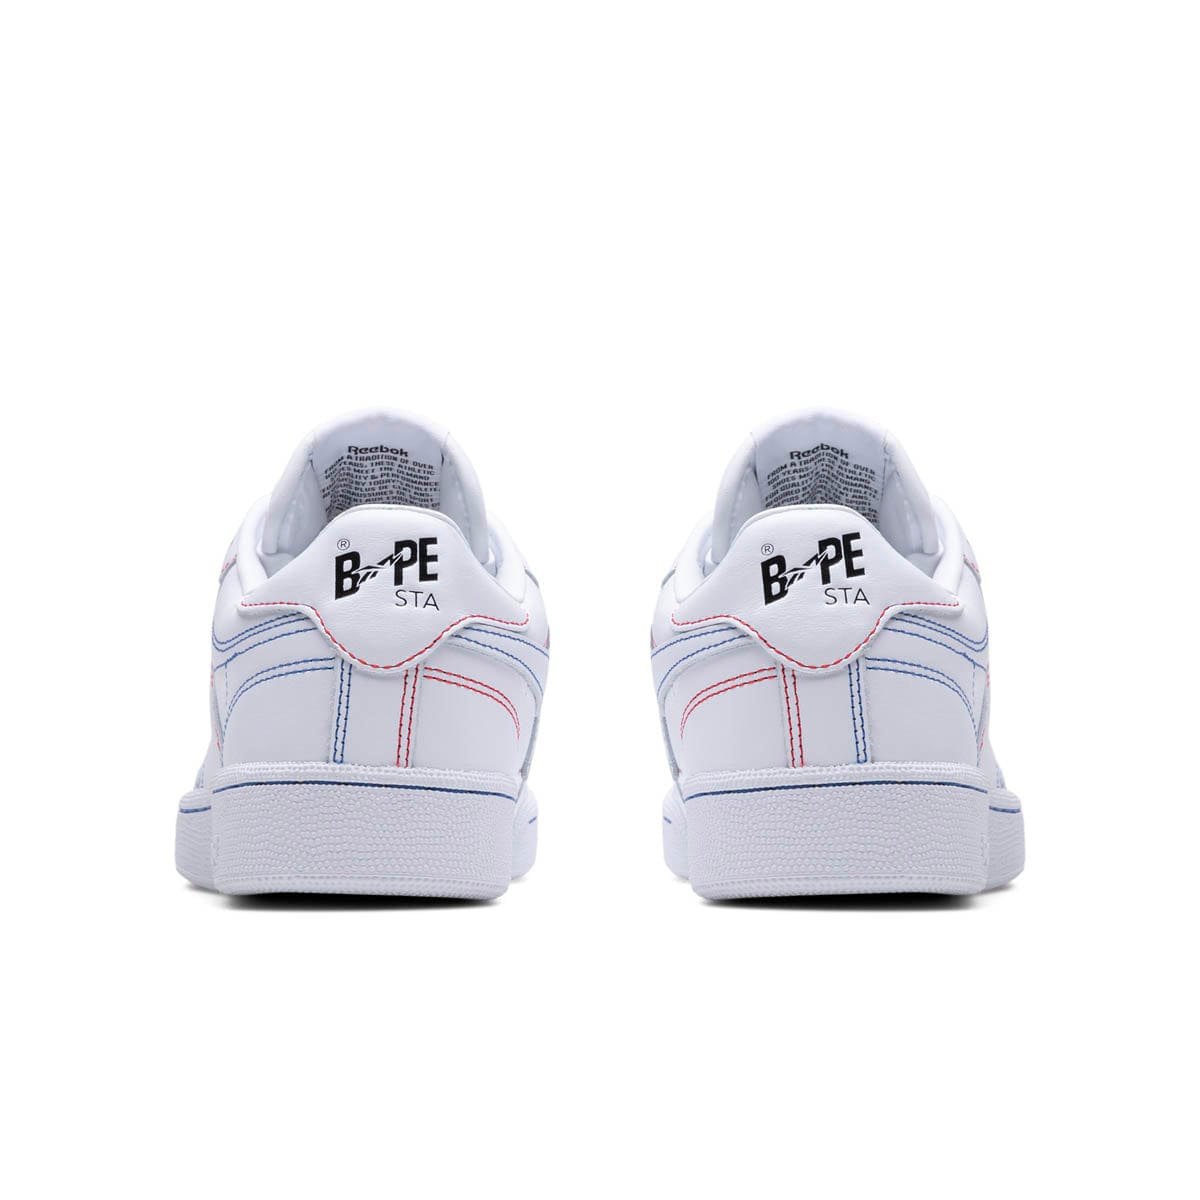 Reebok Sneakers X BAPE CLUB C 85